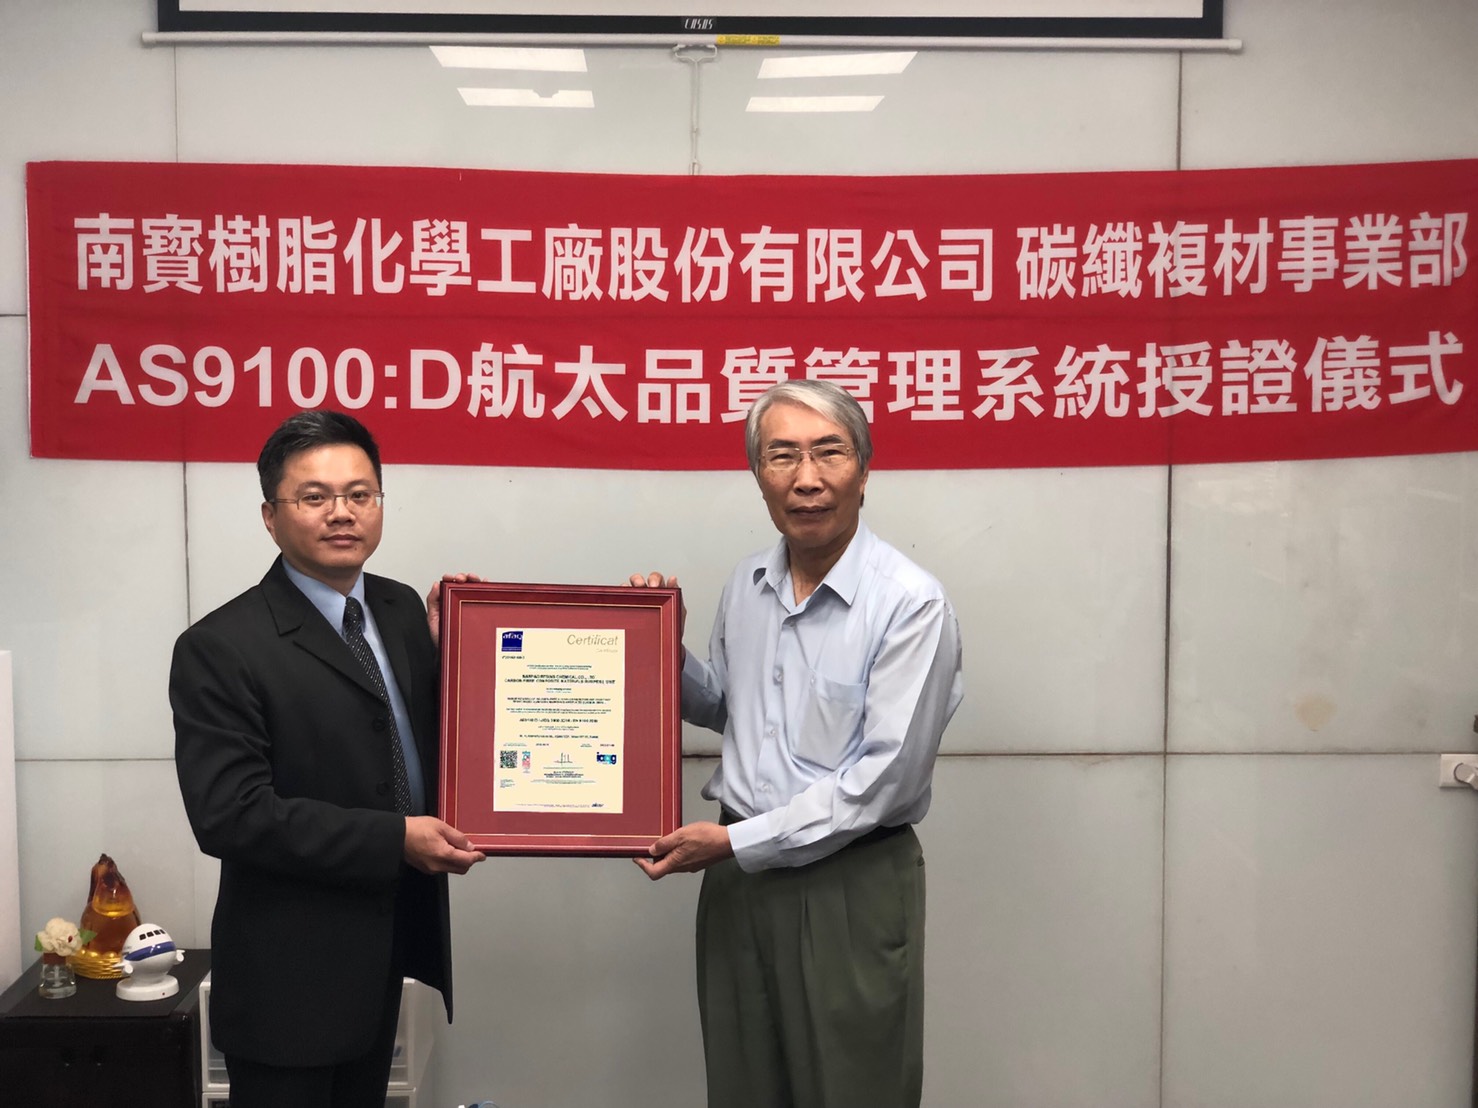 碳纖複材事業部獲得 AS9100:D 航太品質管理系統授證